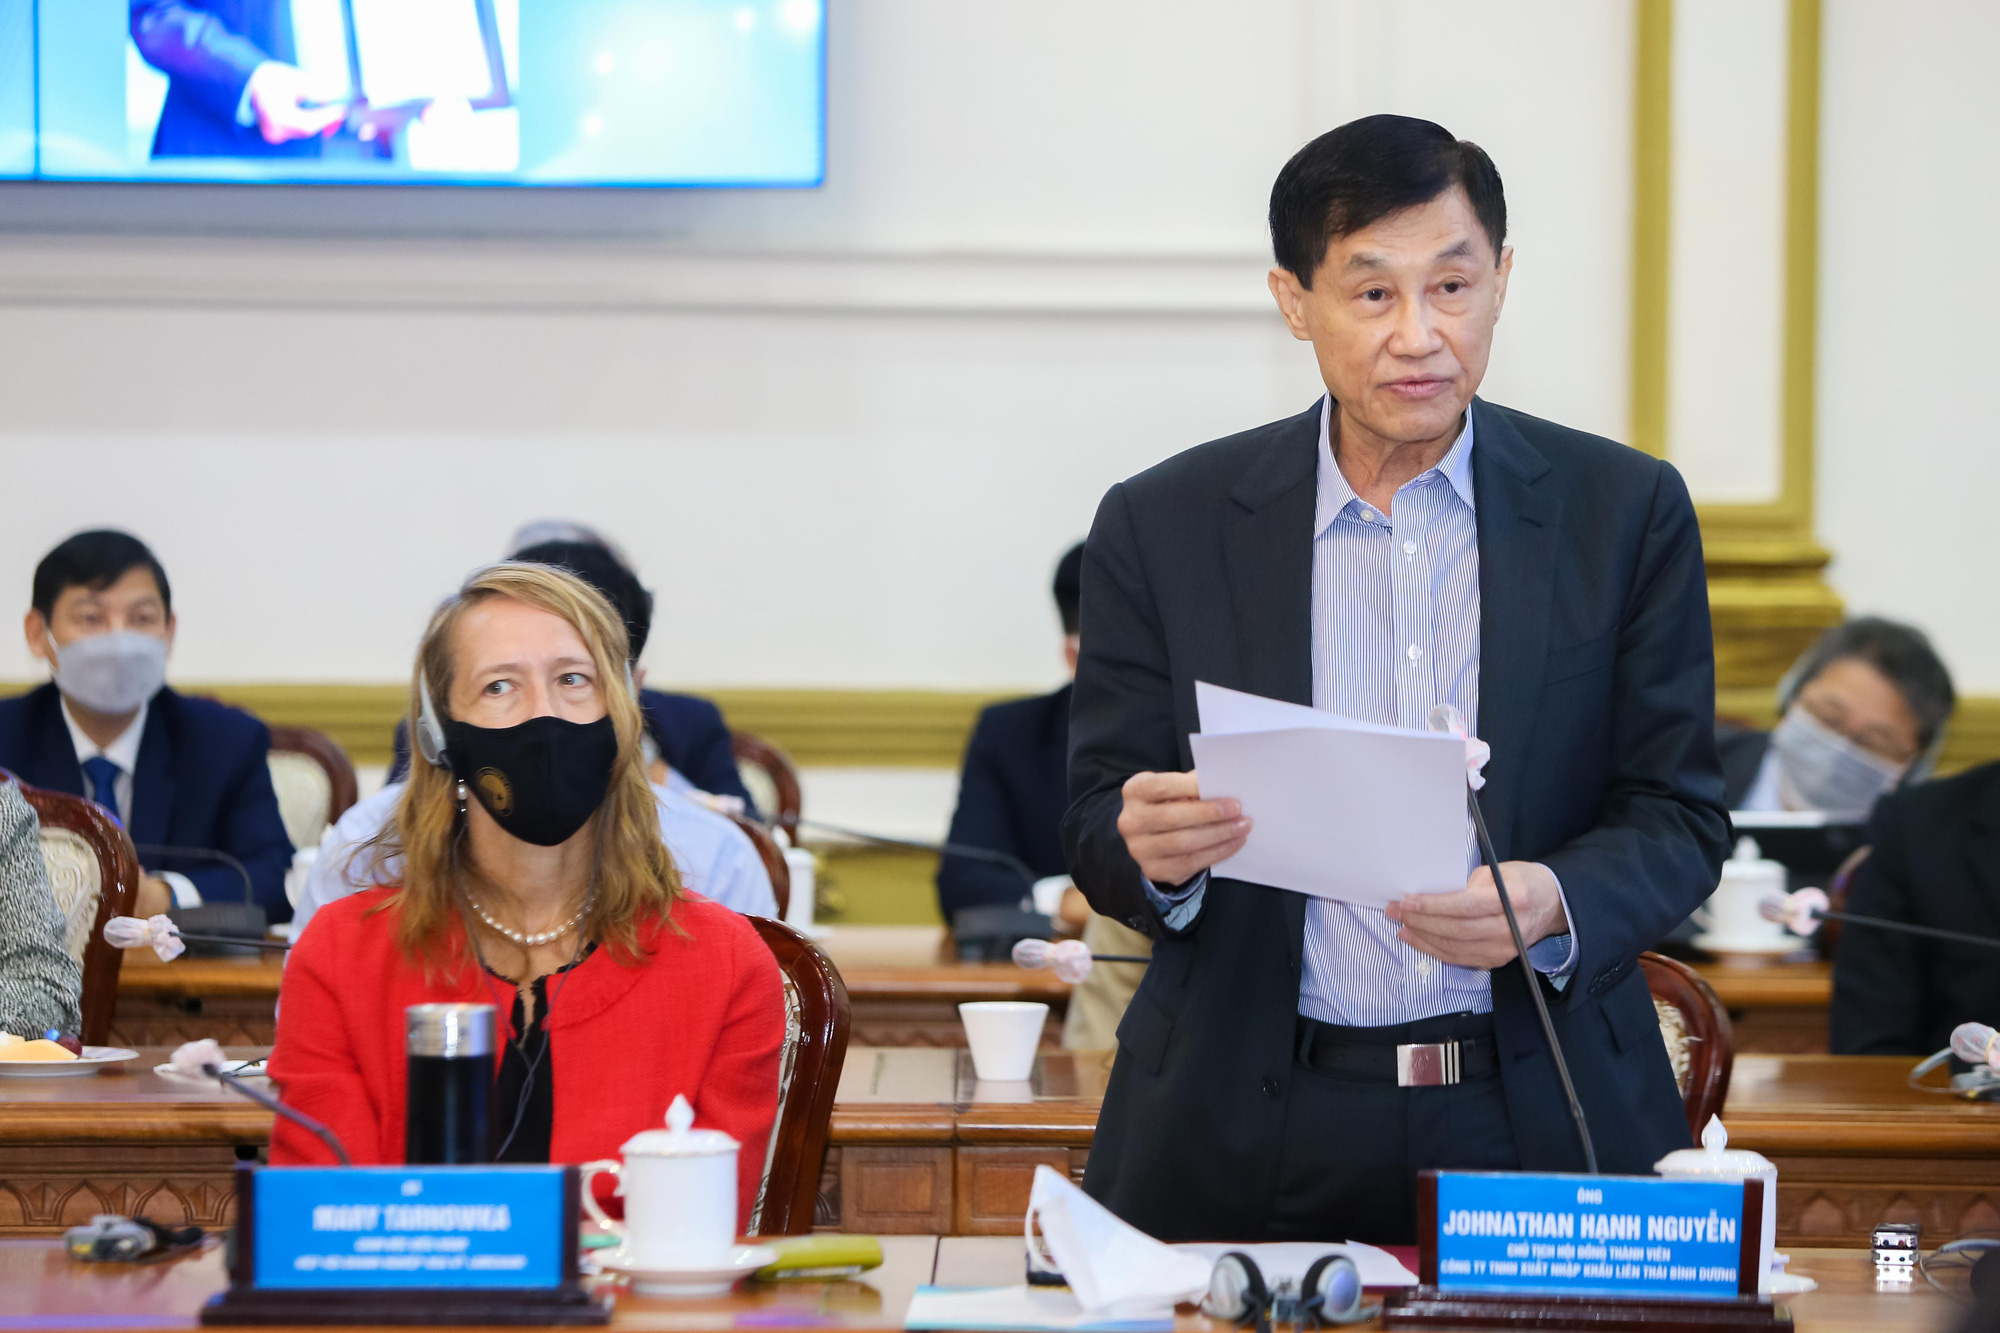 2-Ông Johnathan Hạnh Nguyễn, chủ tịch công ty TNHH XNK Liên Thái Bình Dương đóng góp ý kiến cho hội nghị - ảnh Hoàng Triều_2